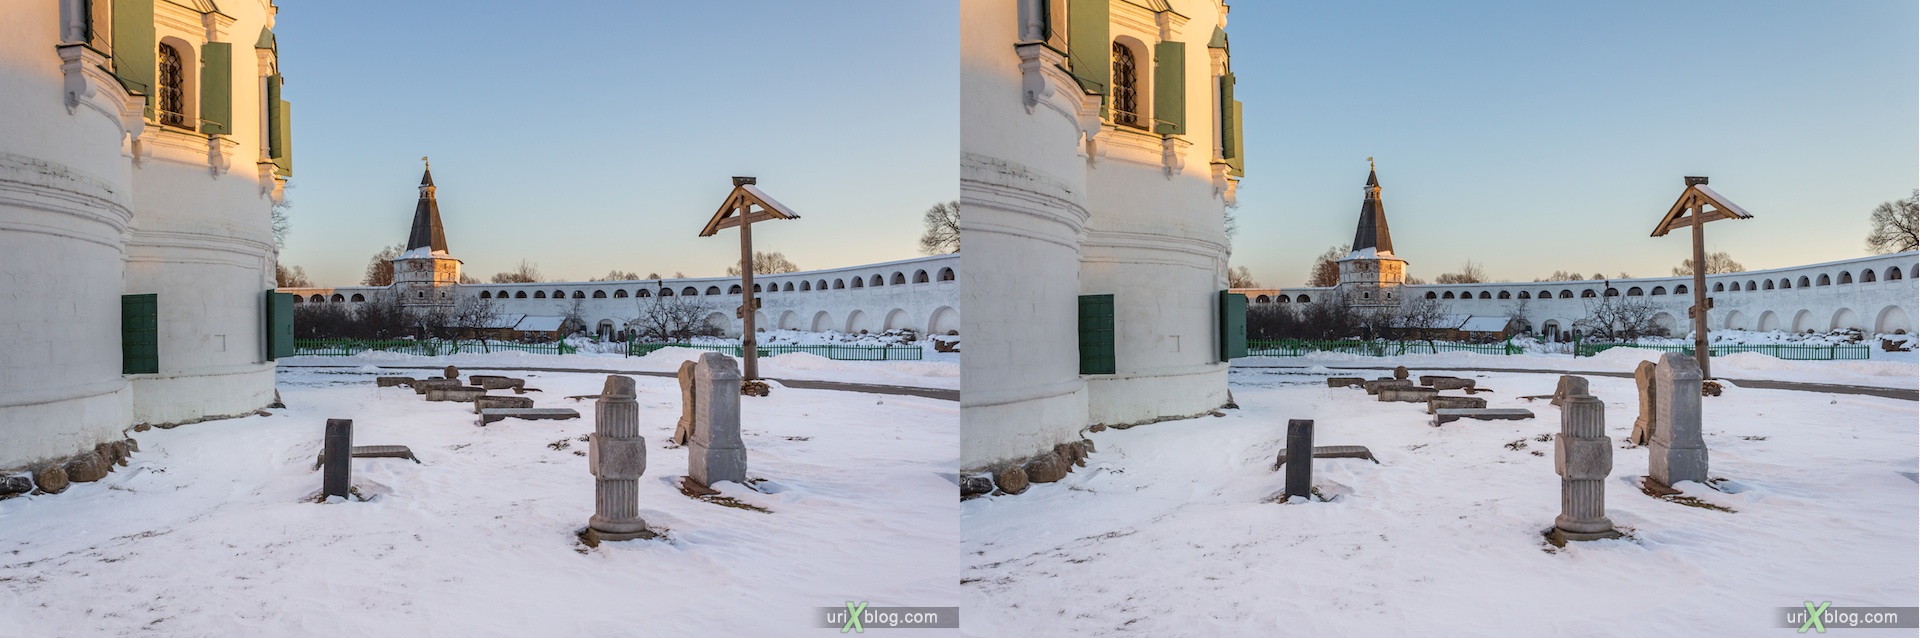 2012, Иосифо-Волоцкий монастырь, Московская область, Россия, зима, снег, утро, мороз, солнце, 3D, перекрёстные стереопары, стерео, стереопара, стереопары